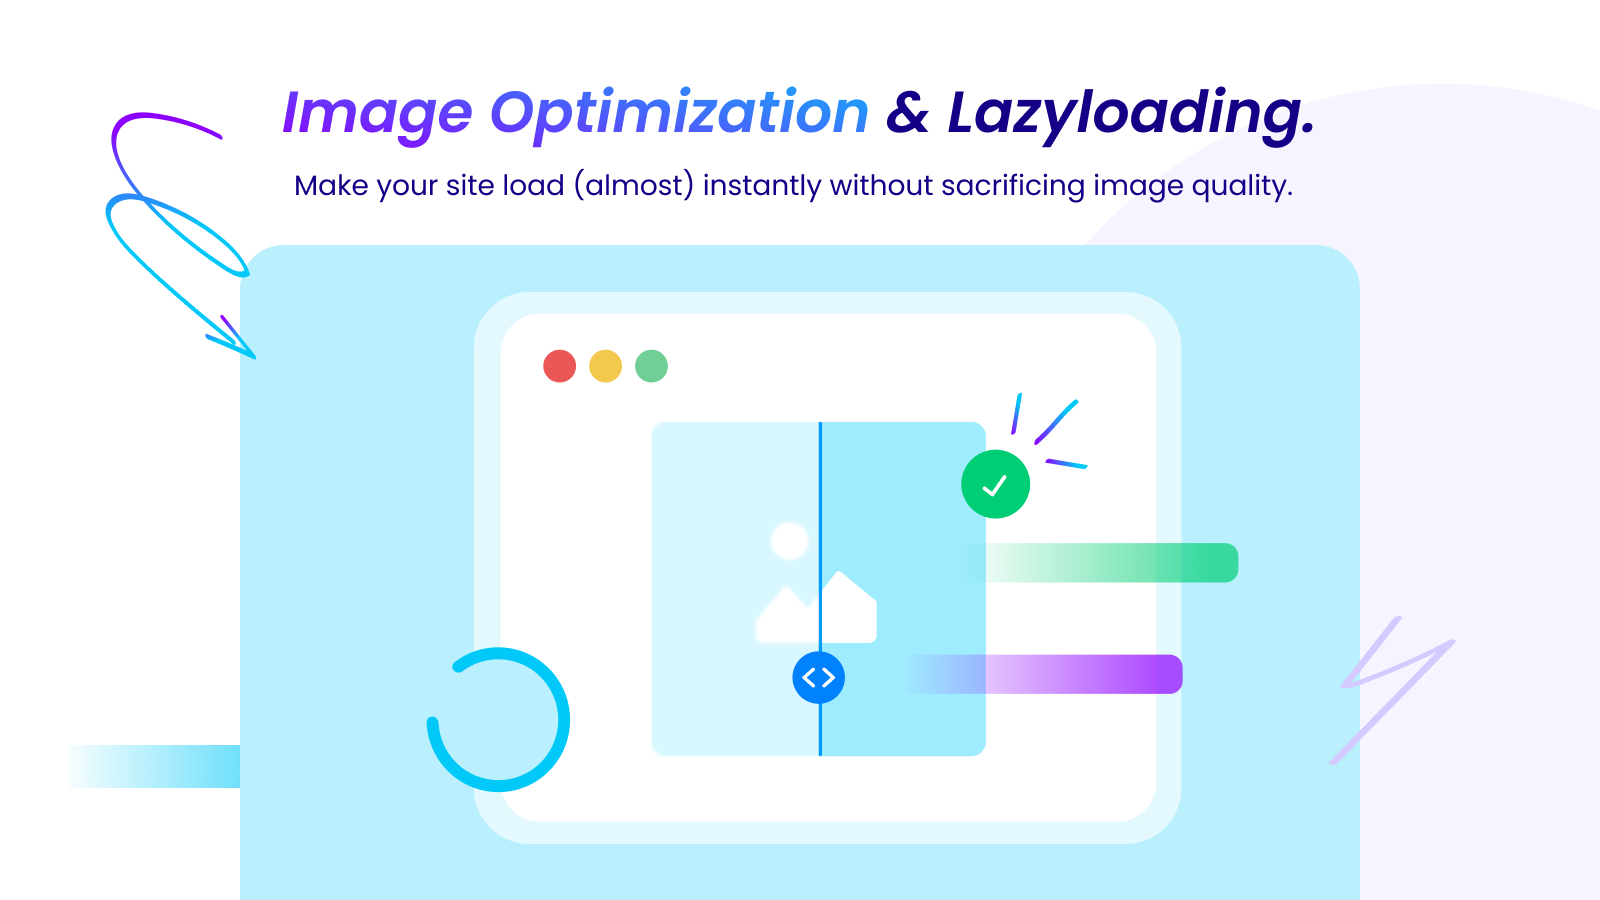 Image optimization & Lazyloading